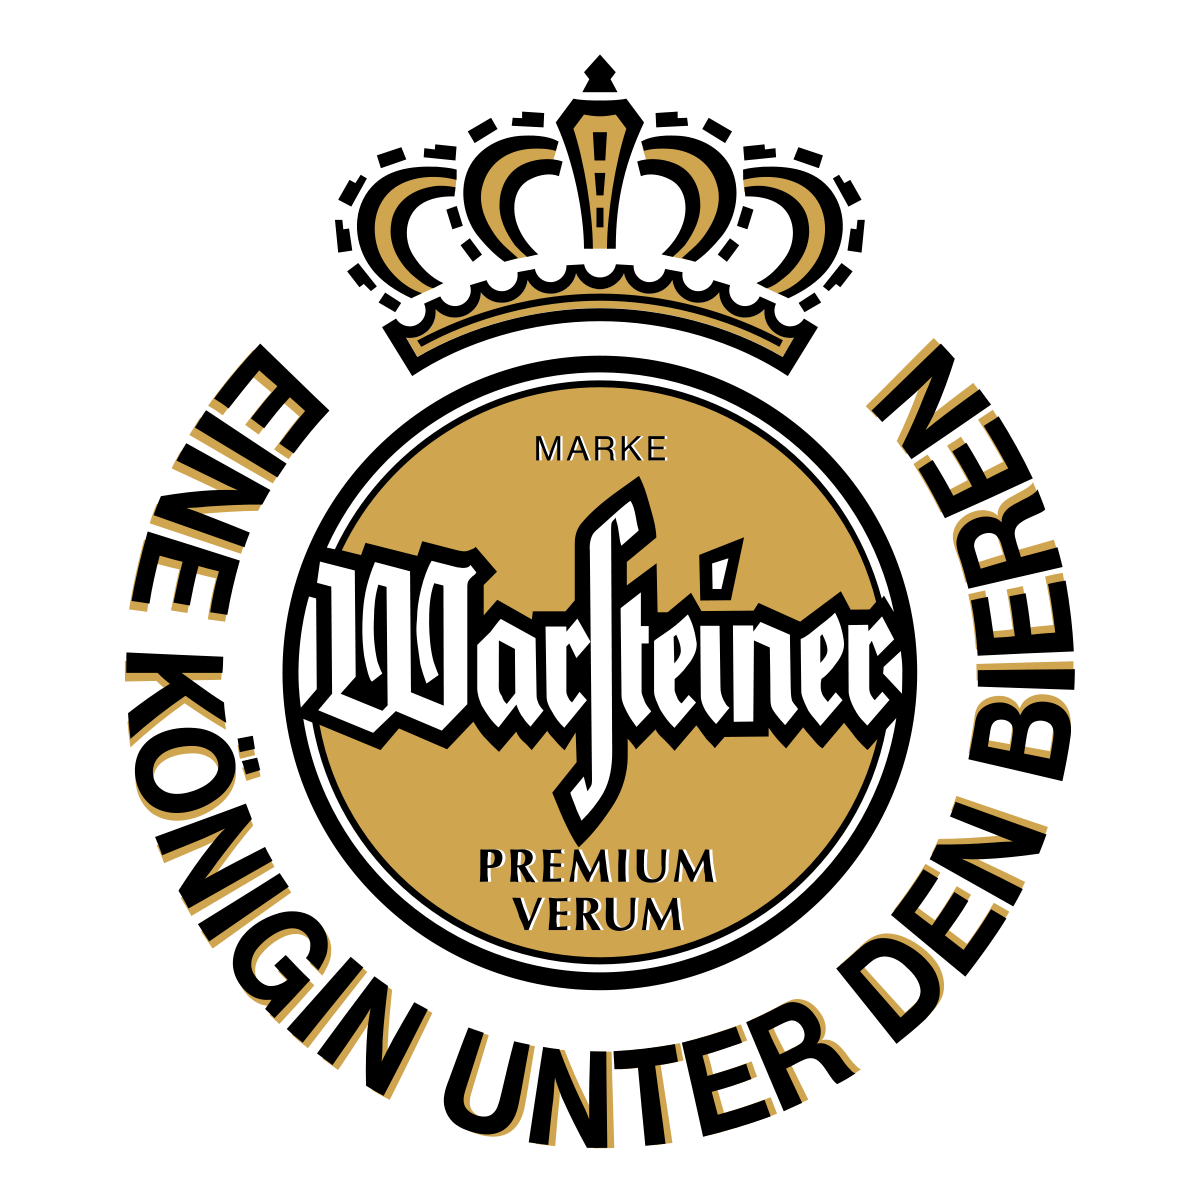 Warsteiner Beer Logo - Warsteiner